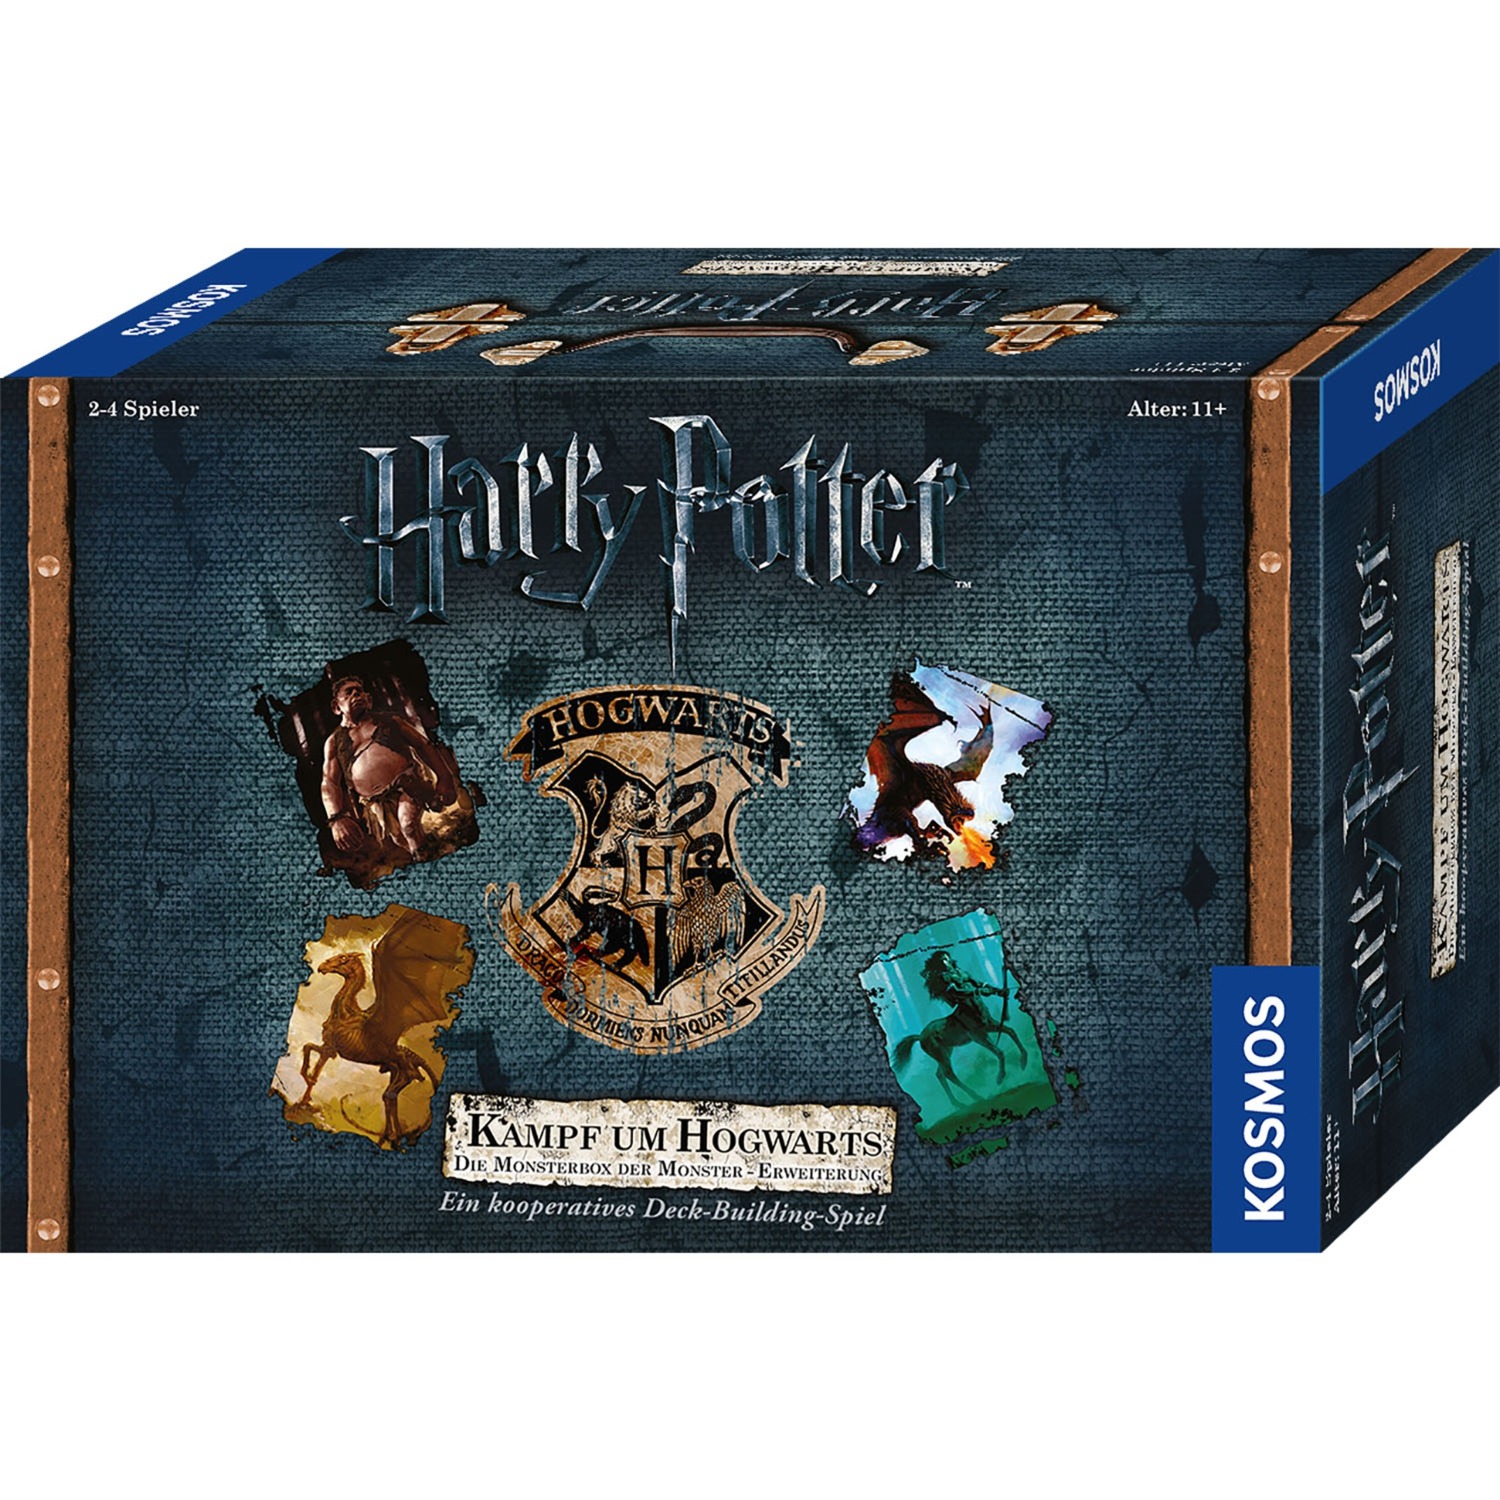 Image of Alternate - Harry Potter - Der Kampf um Hogwarts - Die Monsterbox der Monster, Kartenspiel online einkaufen bei Alternate